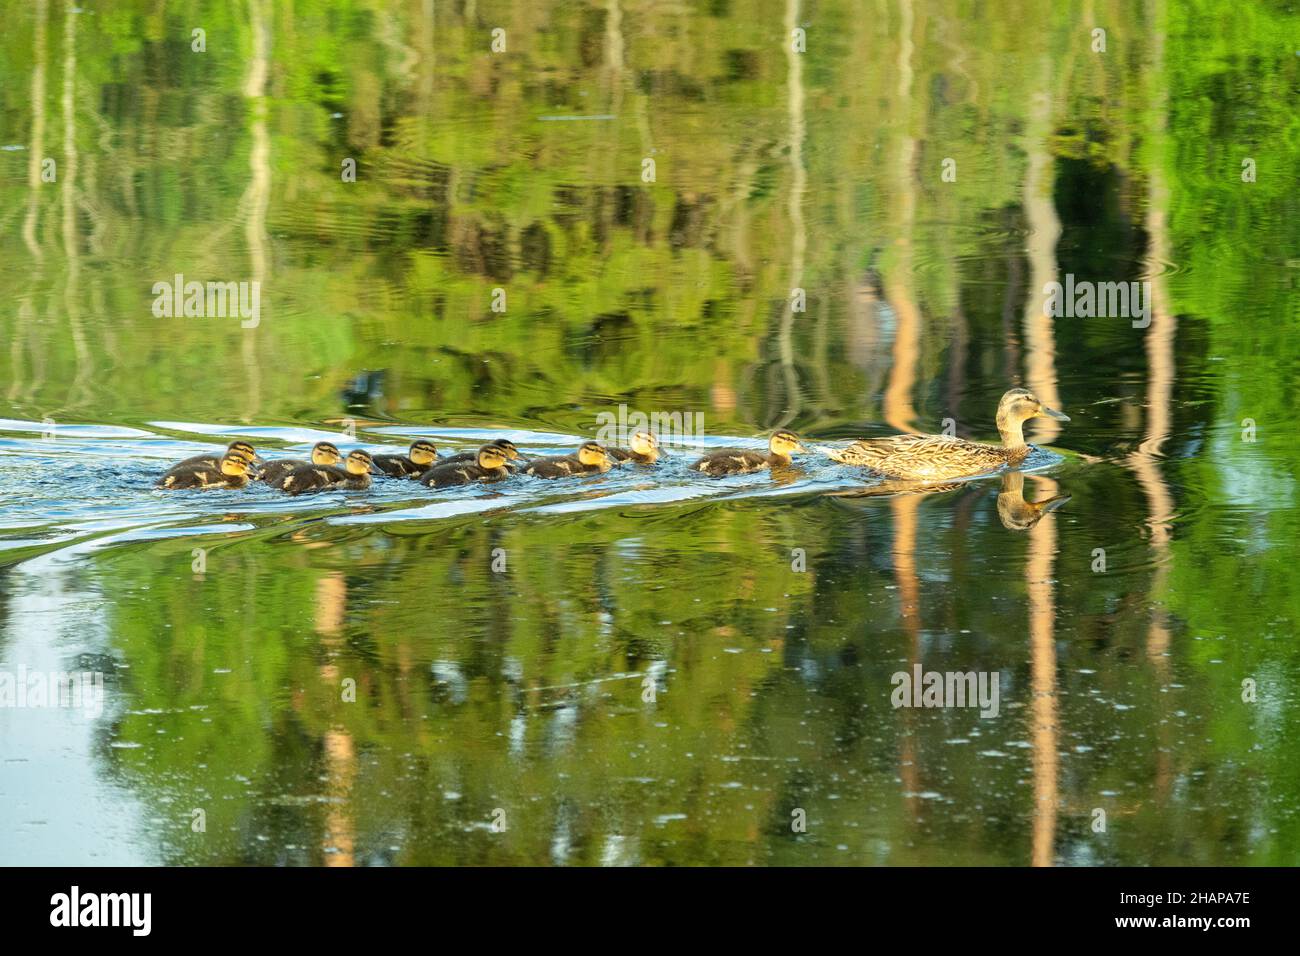 Una famiglia meravigliosa. Un'anatra selvatica (mallard) nuota sull'acqua e 10 anatroccoli sono allineati dopo di essa Foto Stock